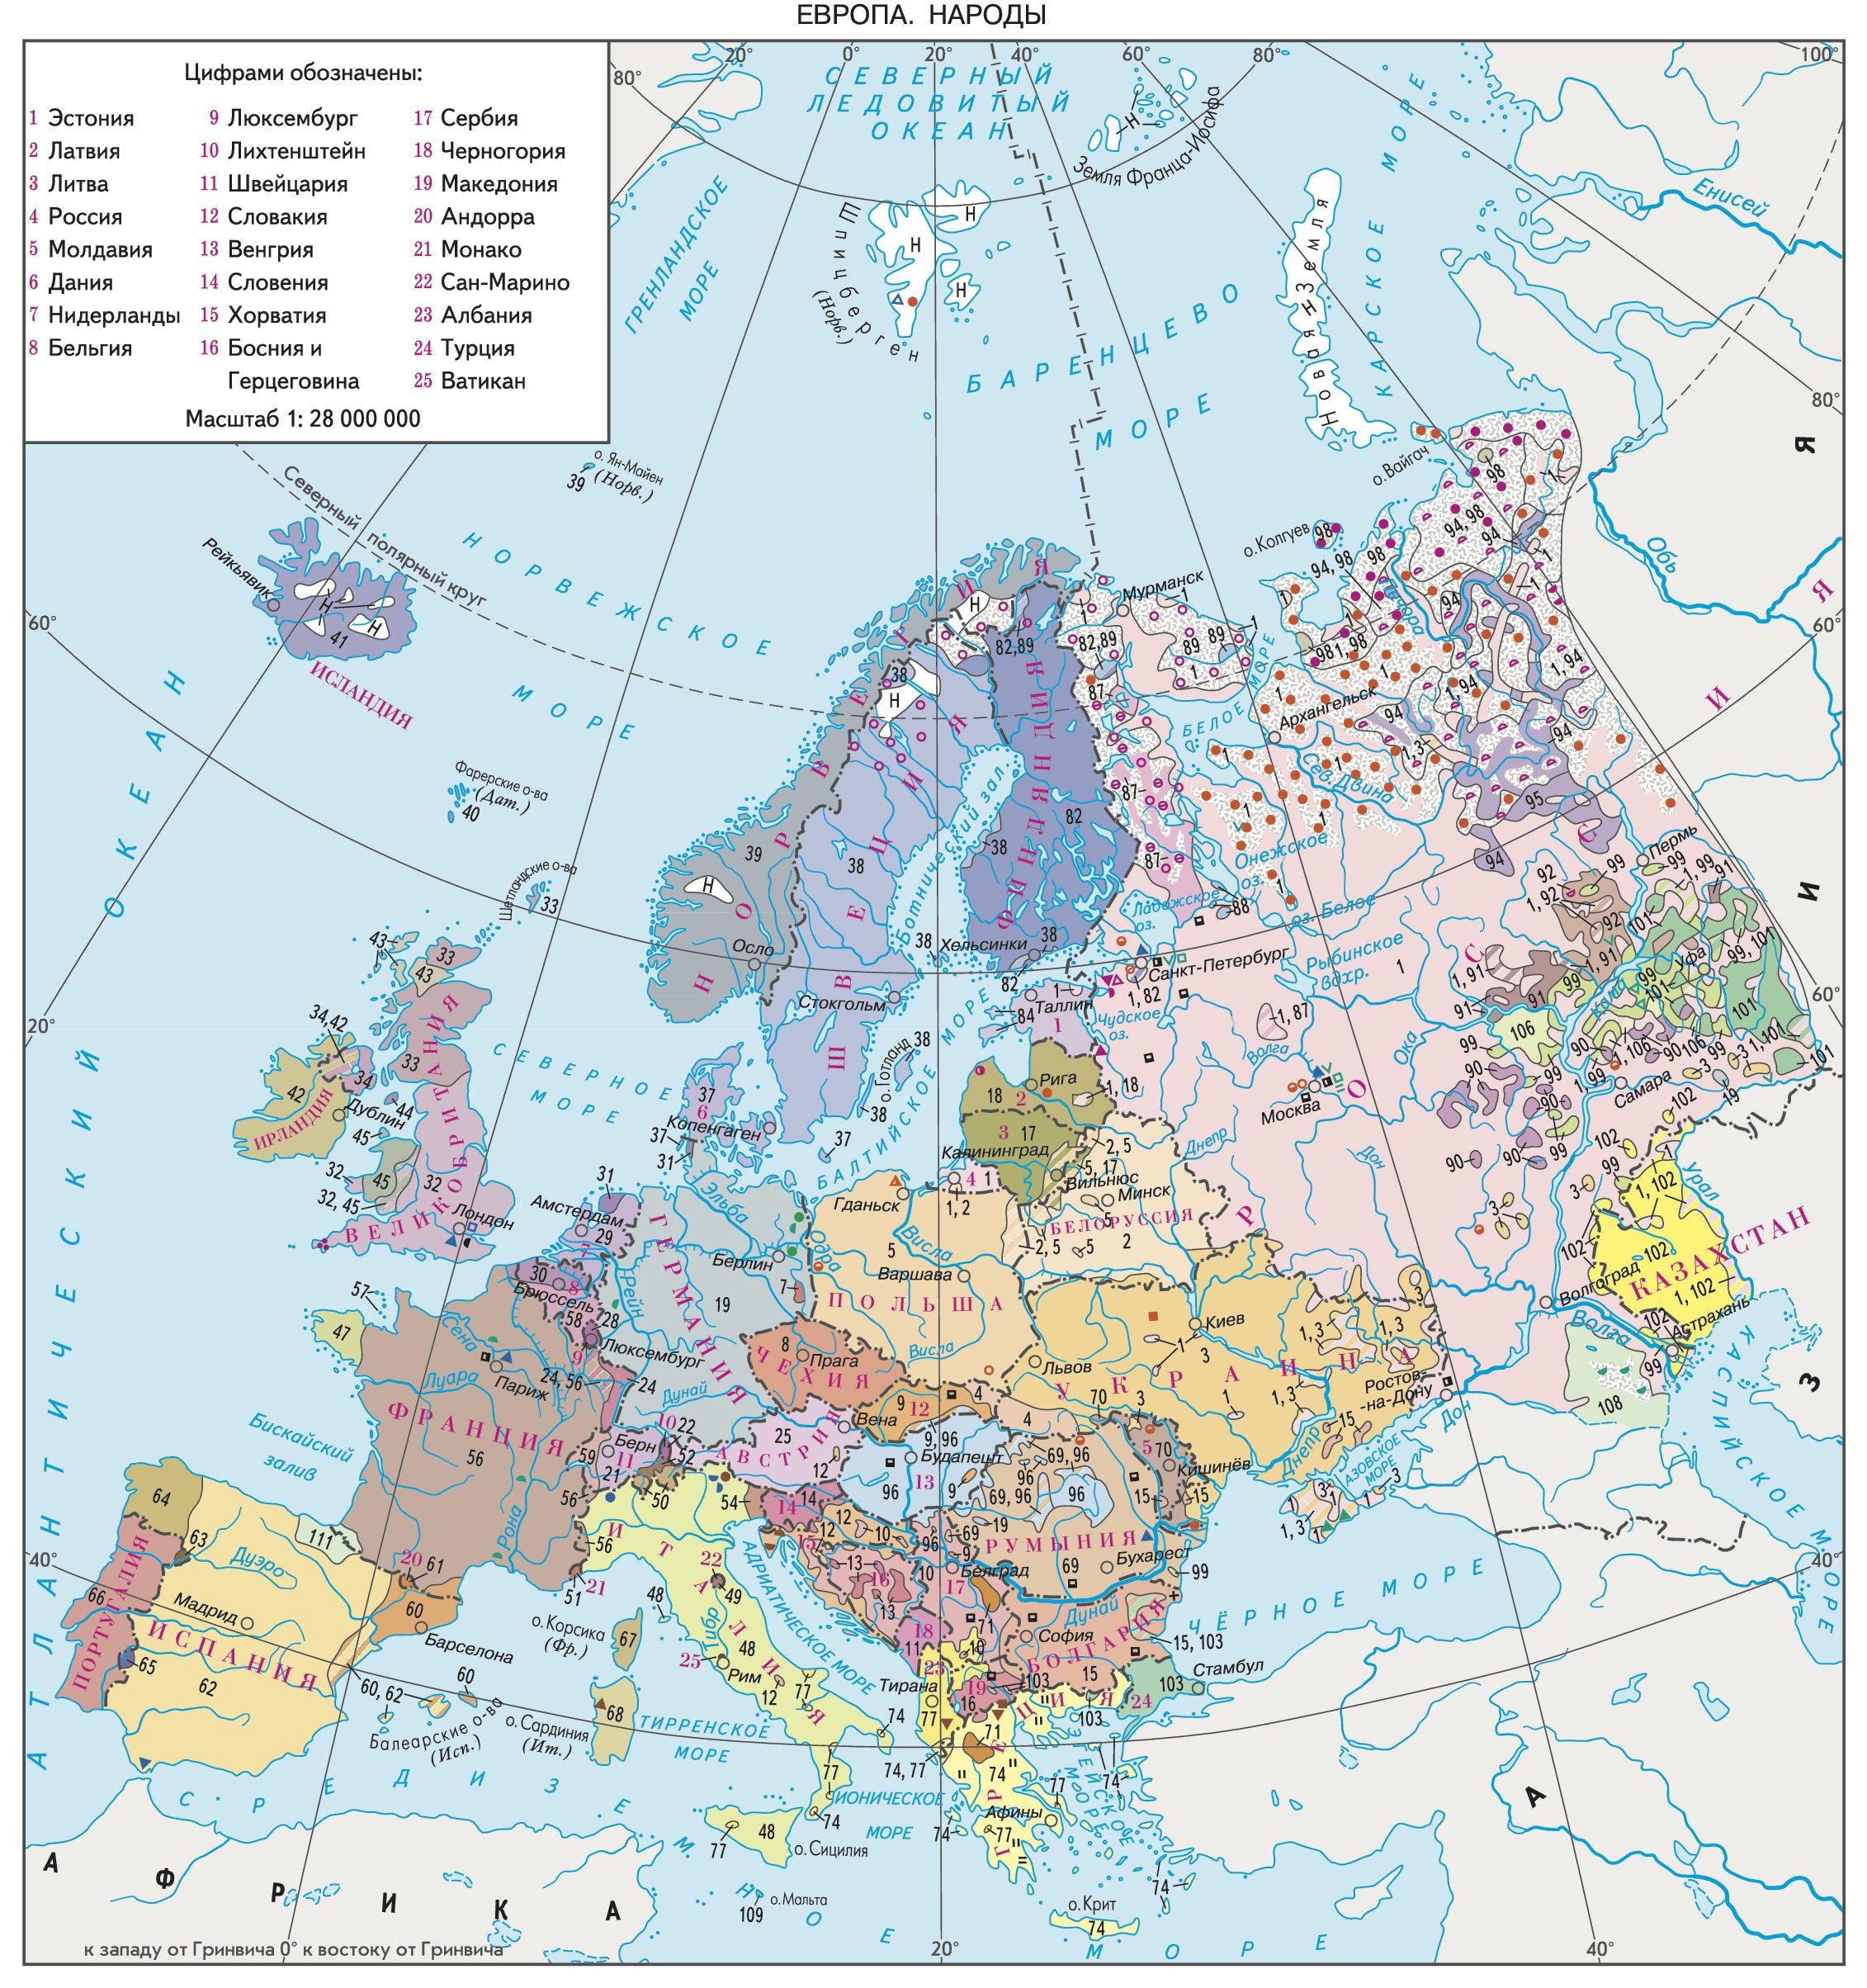 Этнографическая карта Восточной Европы